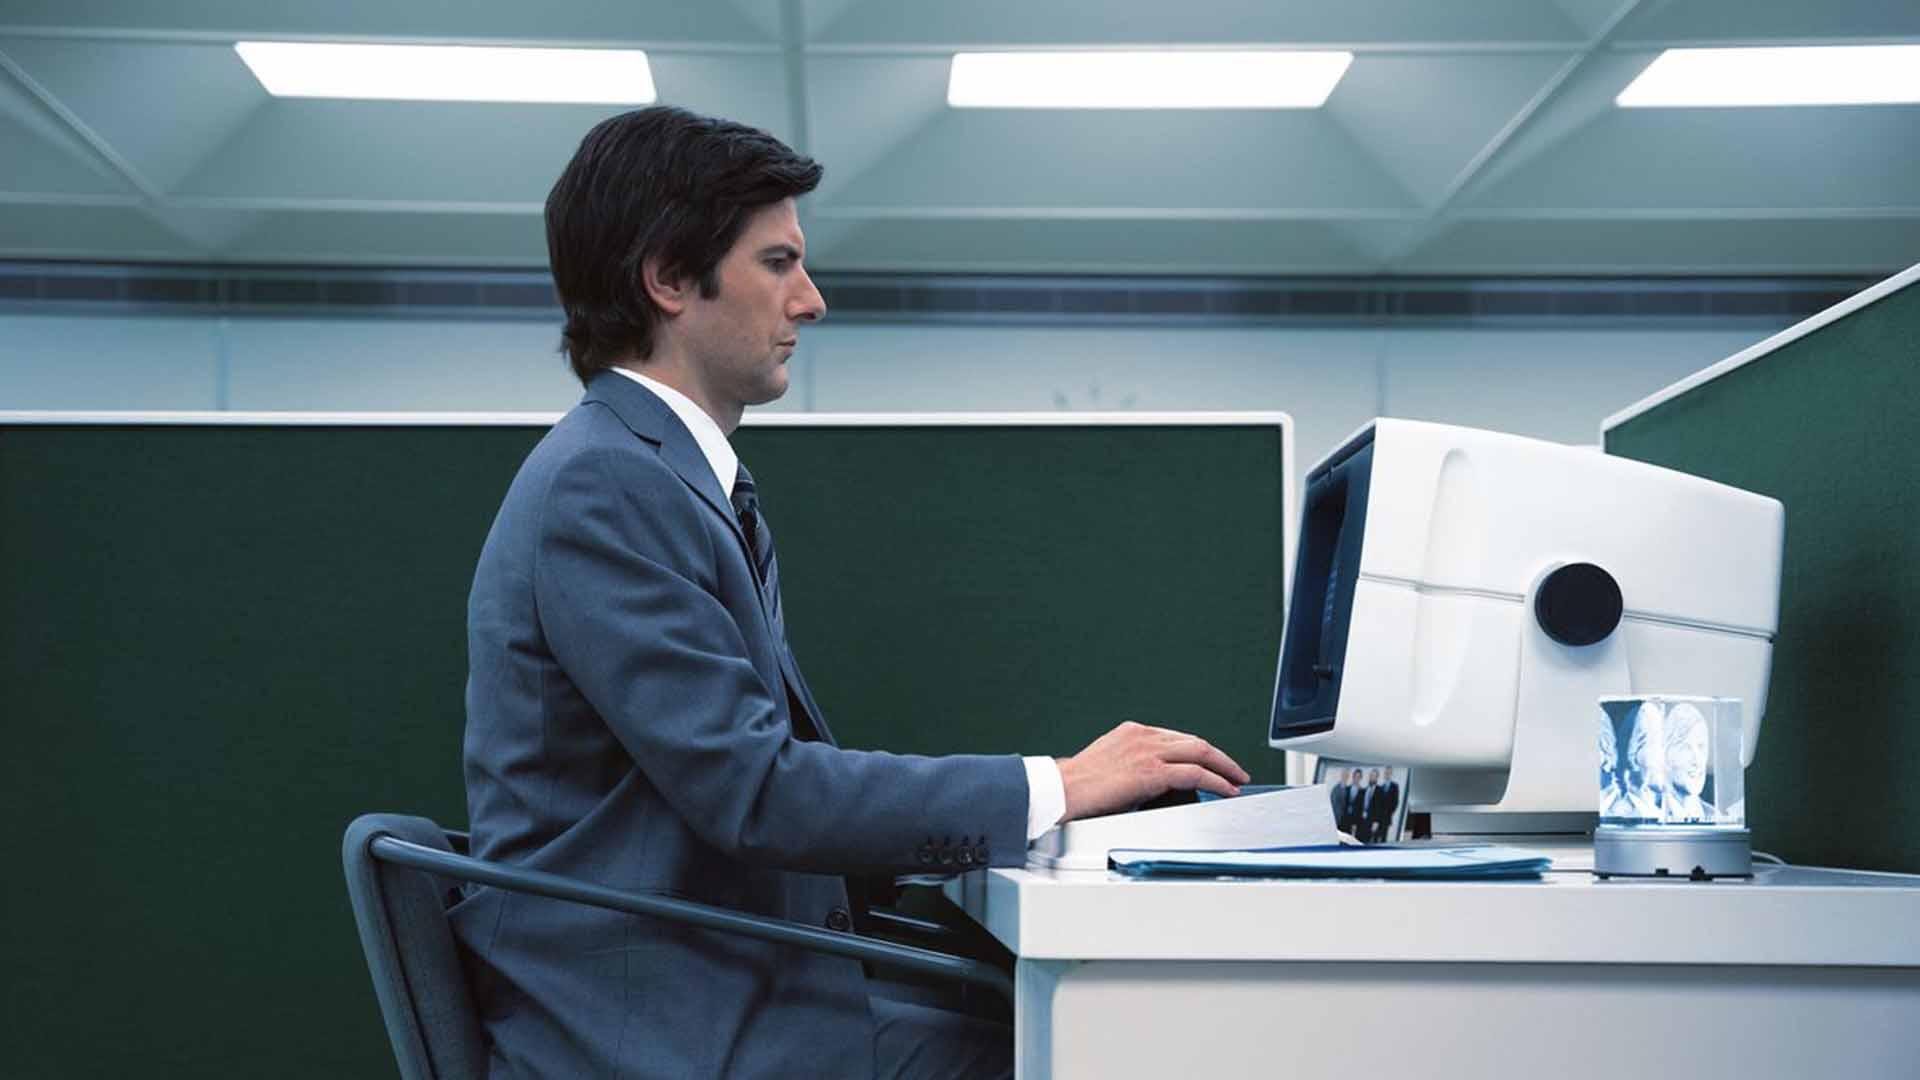 آدام اسکات با یک کامپیوتر شرکتی در Severance کار می کند